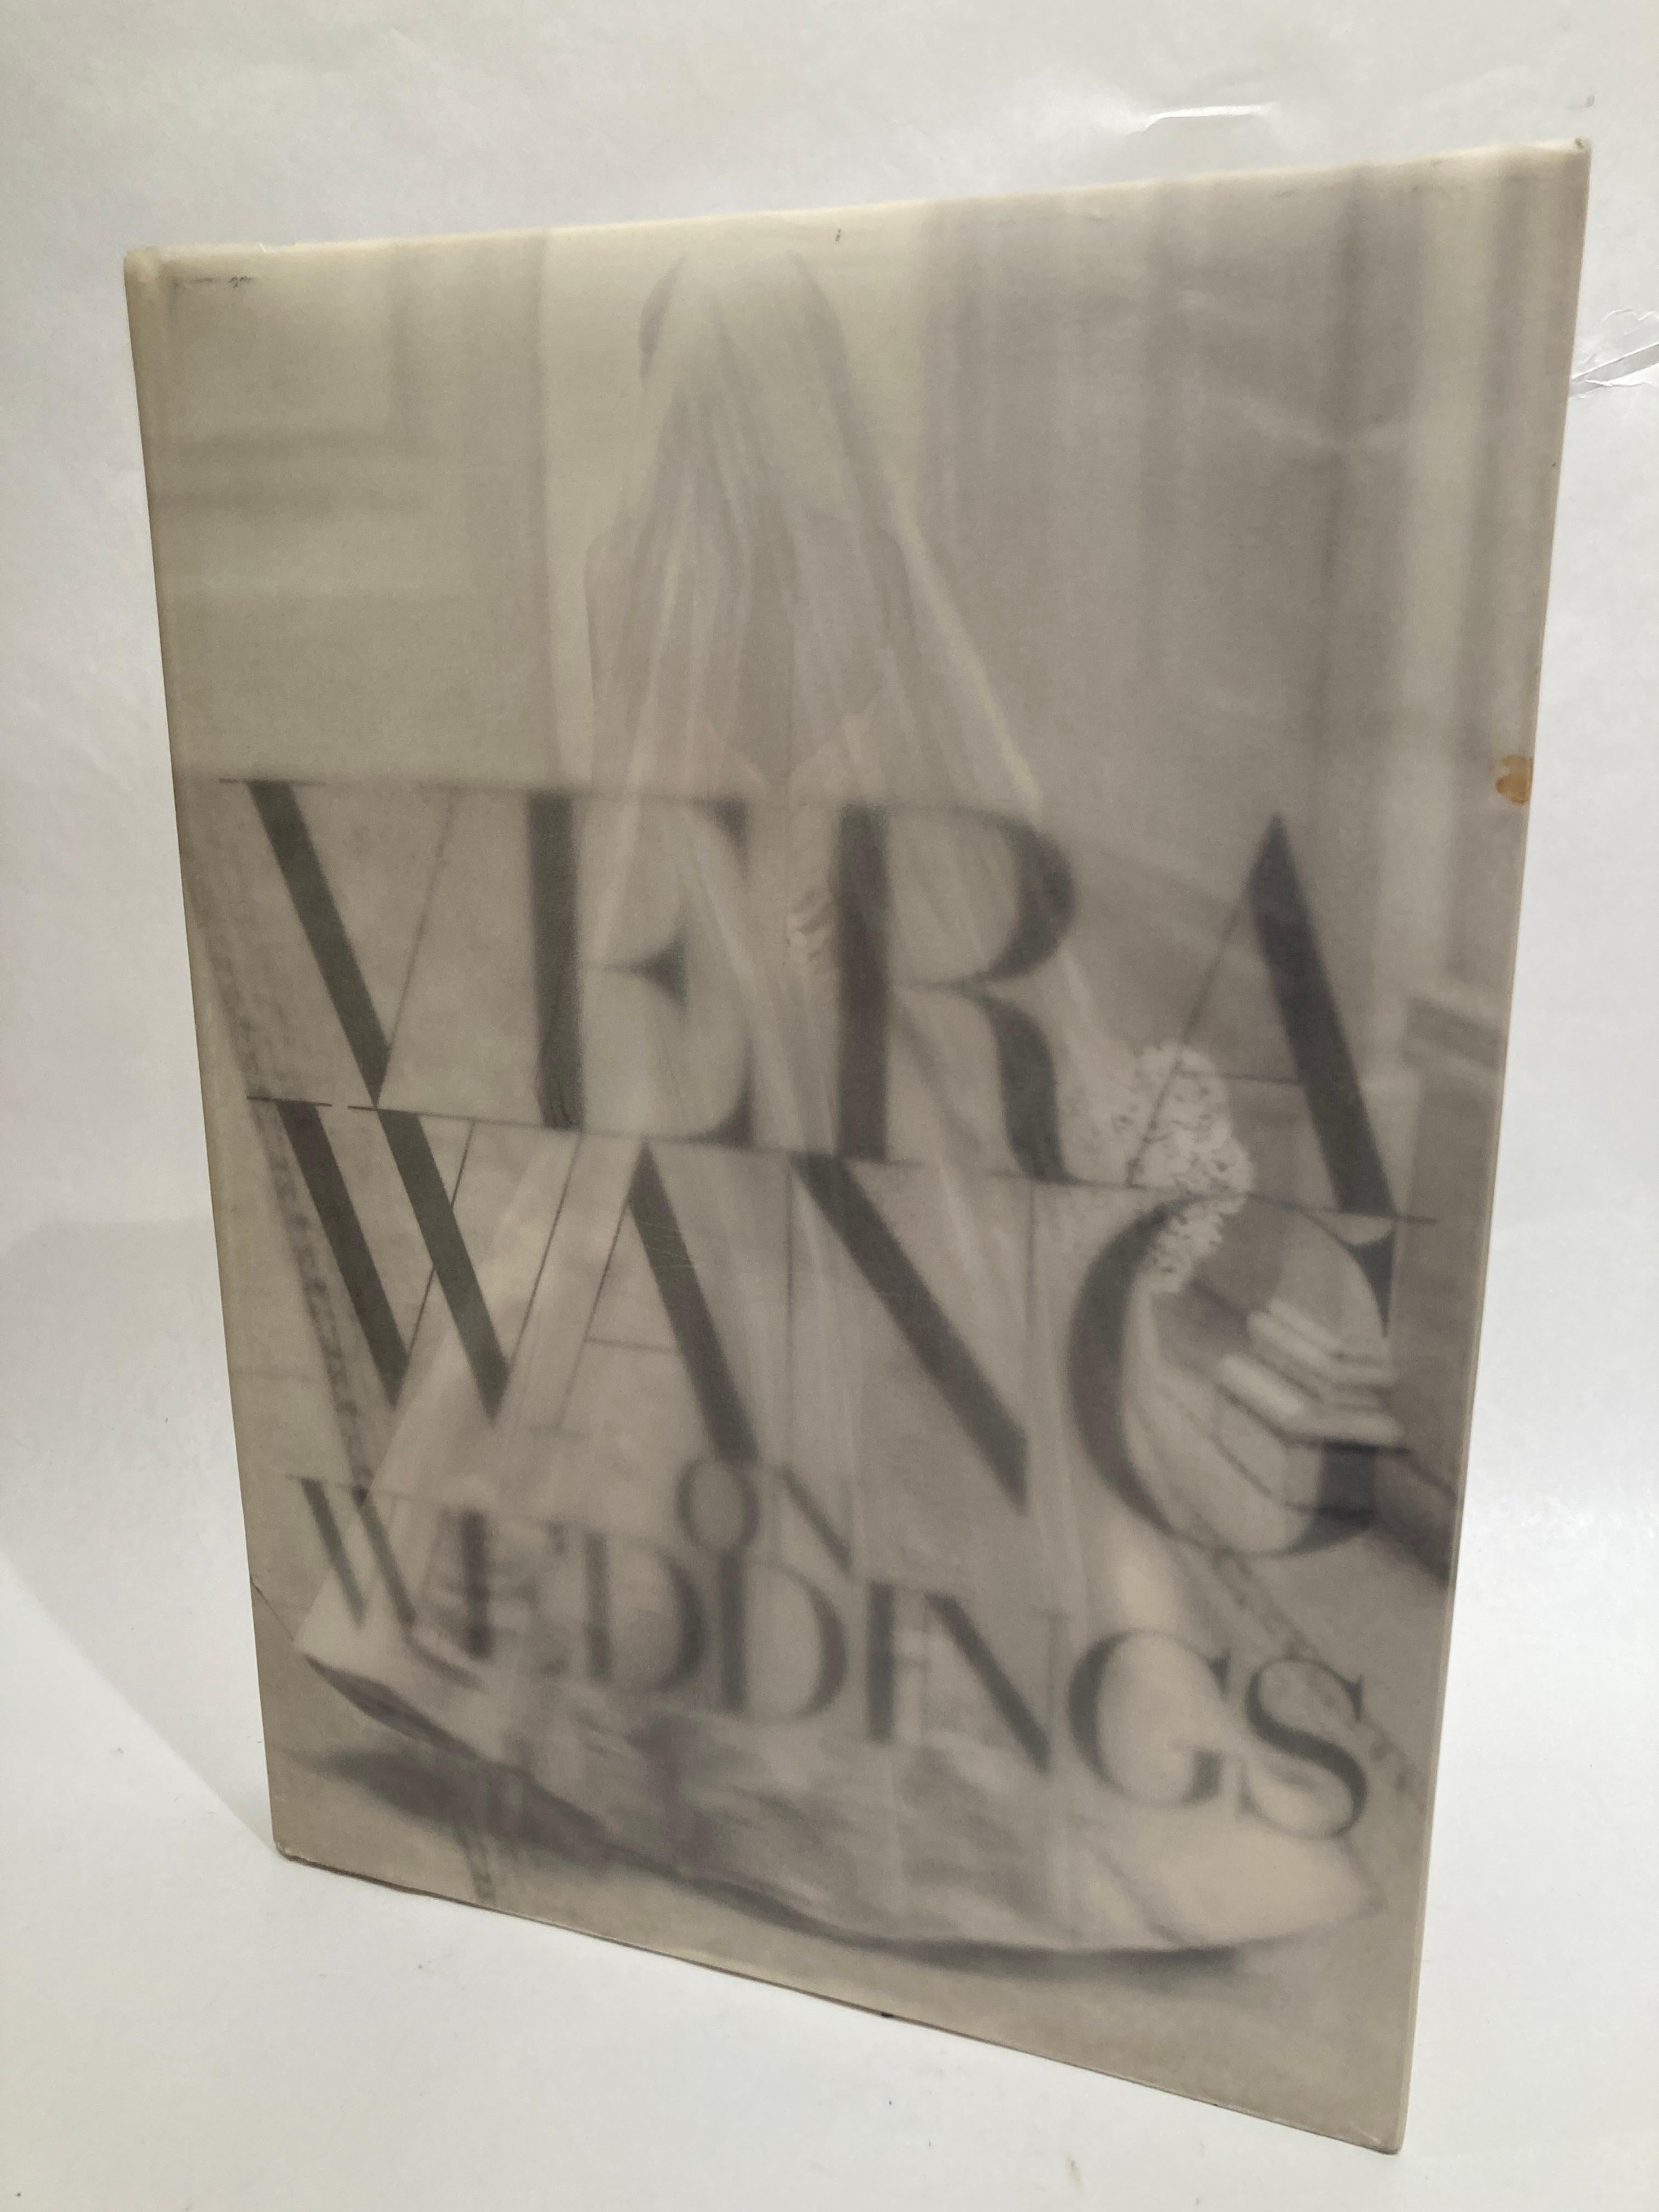 Vera Wang On Weddings von Vera Wang Großes gebundenes Buch.
In diesem hervorragend produzierten Band von Callaway Editions, Ltd. teilt die erfolgreichste Brautkleiddesignerin der Welt ihre Gedanken und Visionen über Hochzeiten. Aus jahrelanger